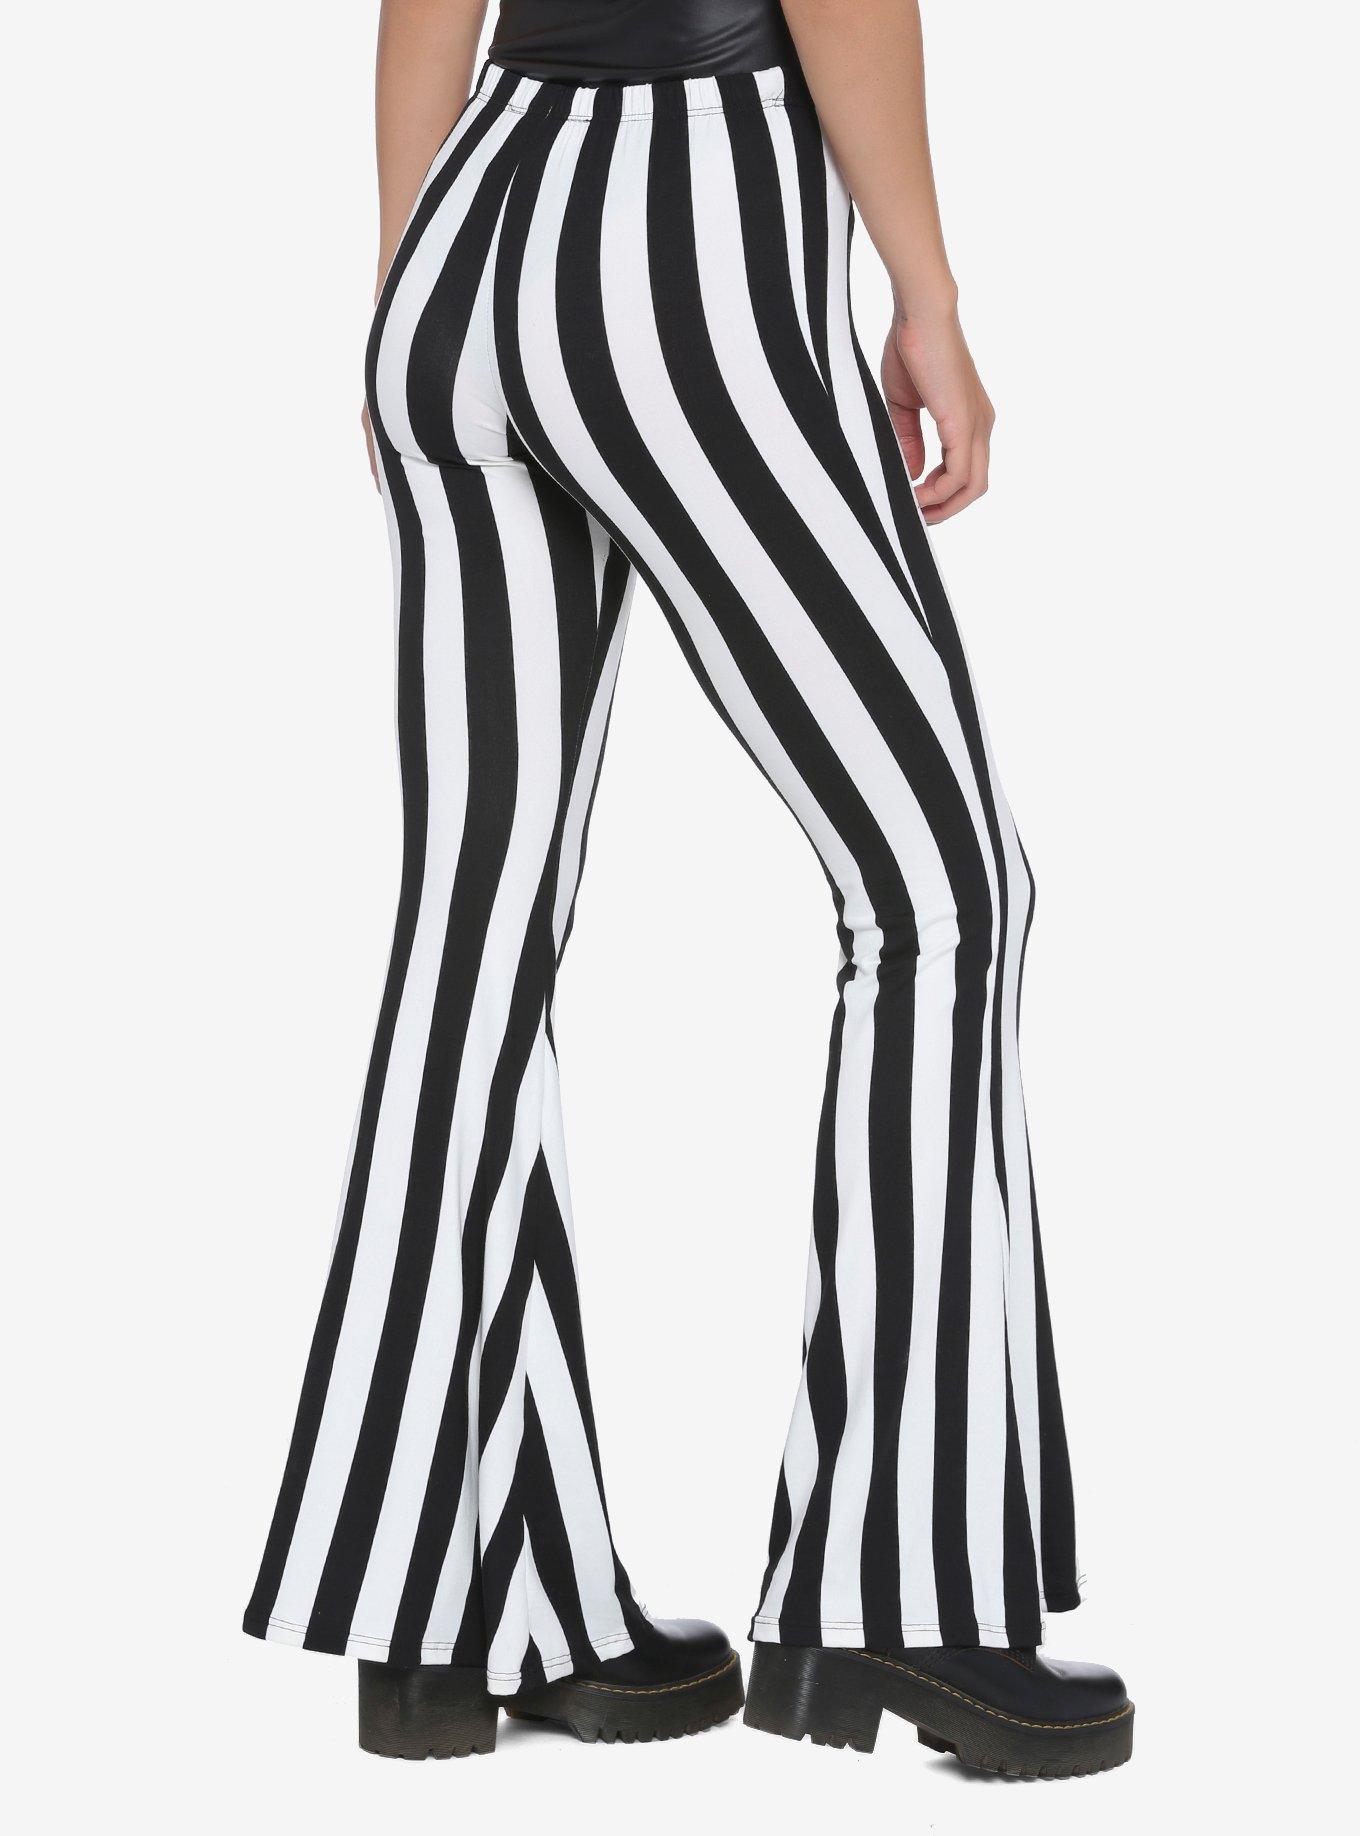 Black & White Stripe Flared Leggings, BLACK WHITE STRIPE, alternate